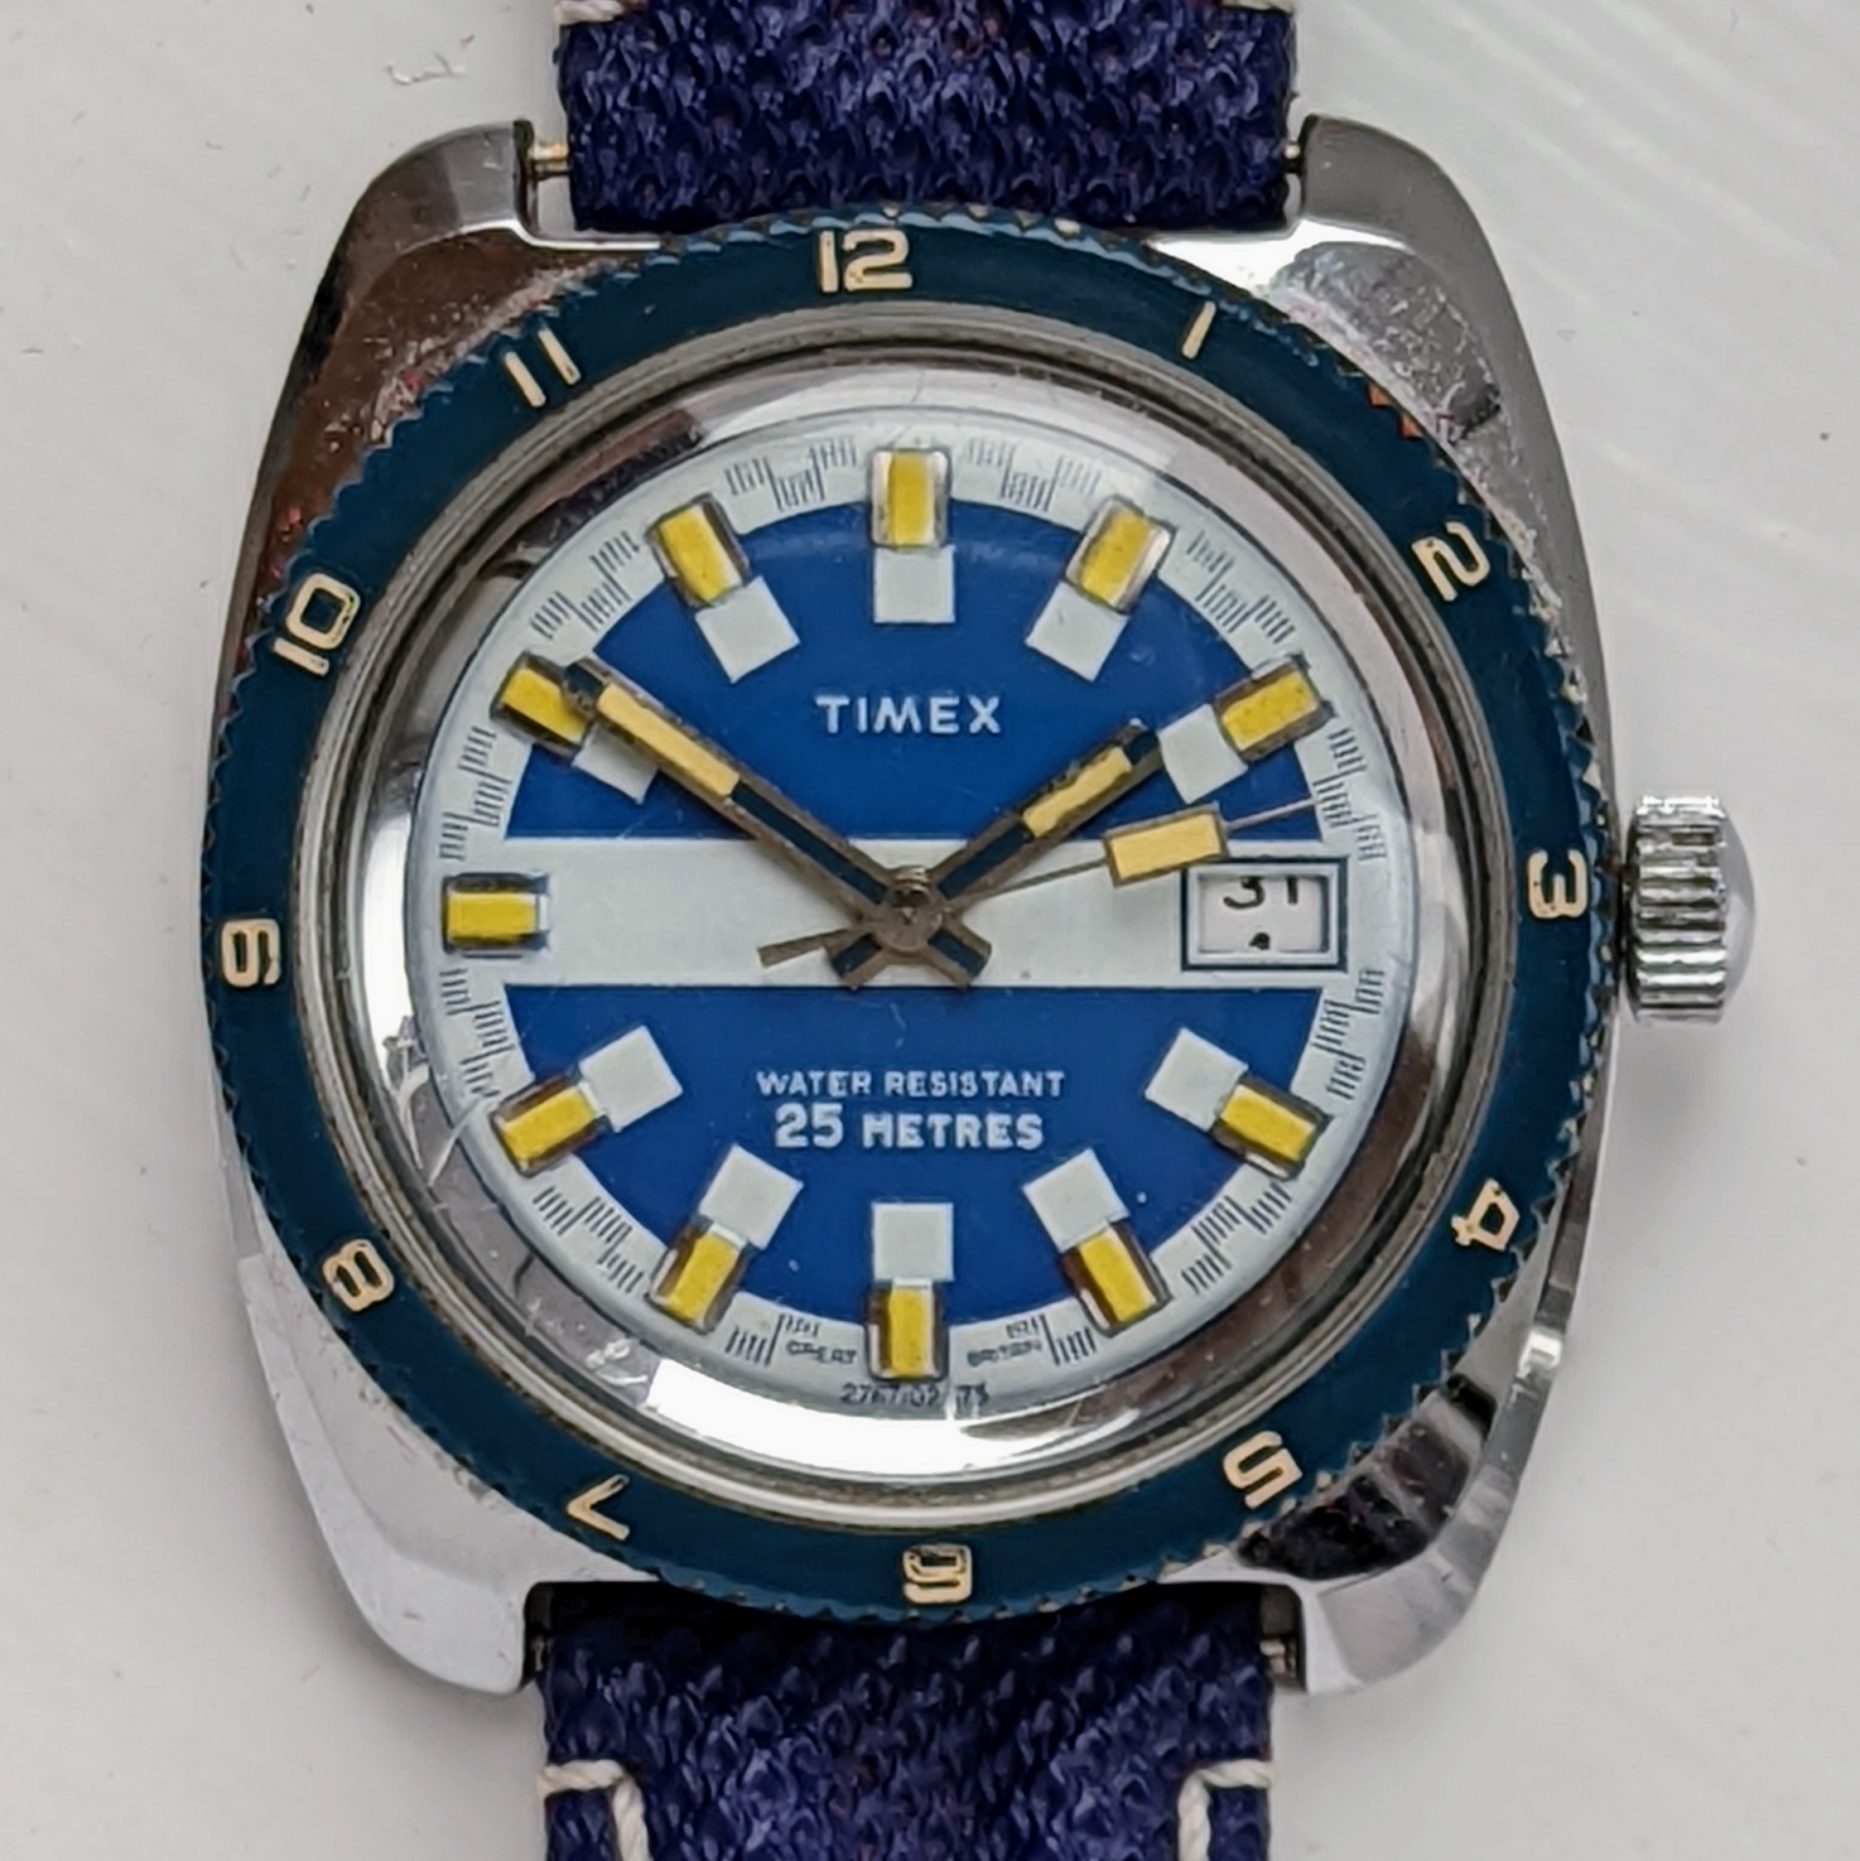 Timex Marlin 27670 02575 [1975]